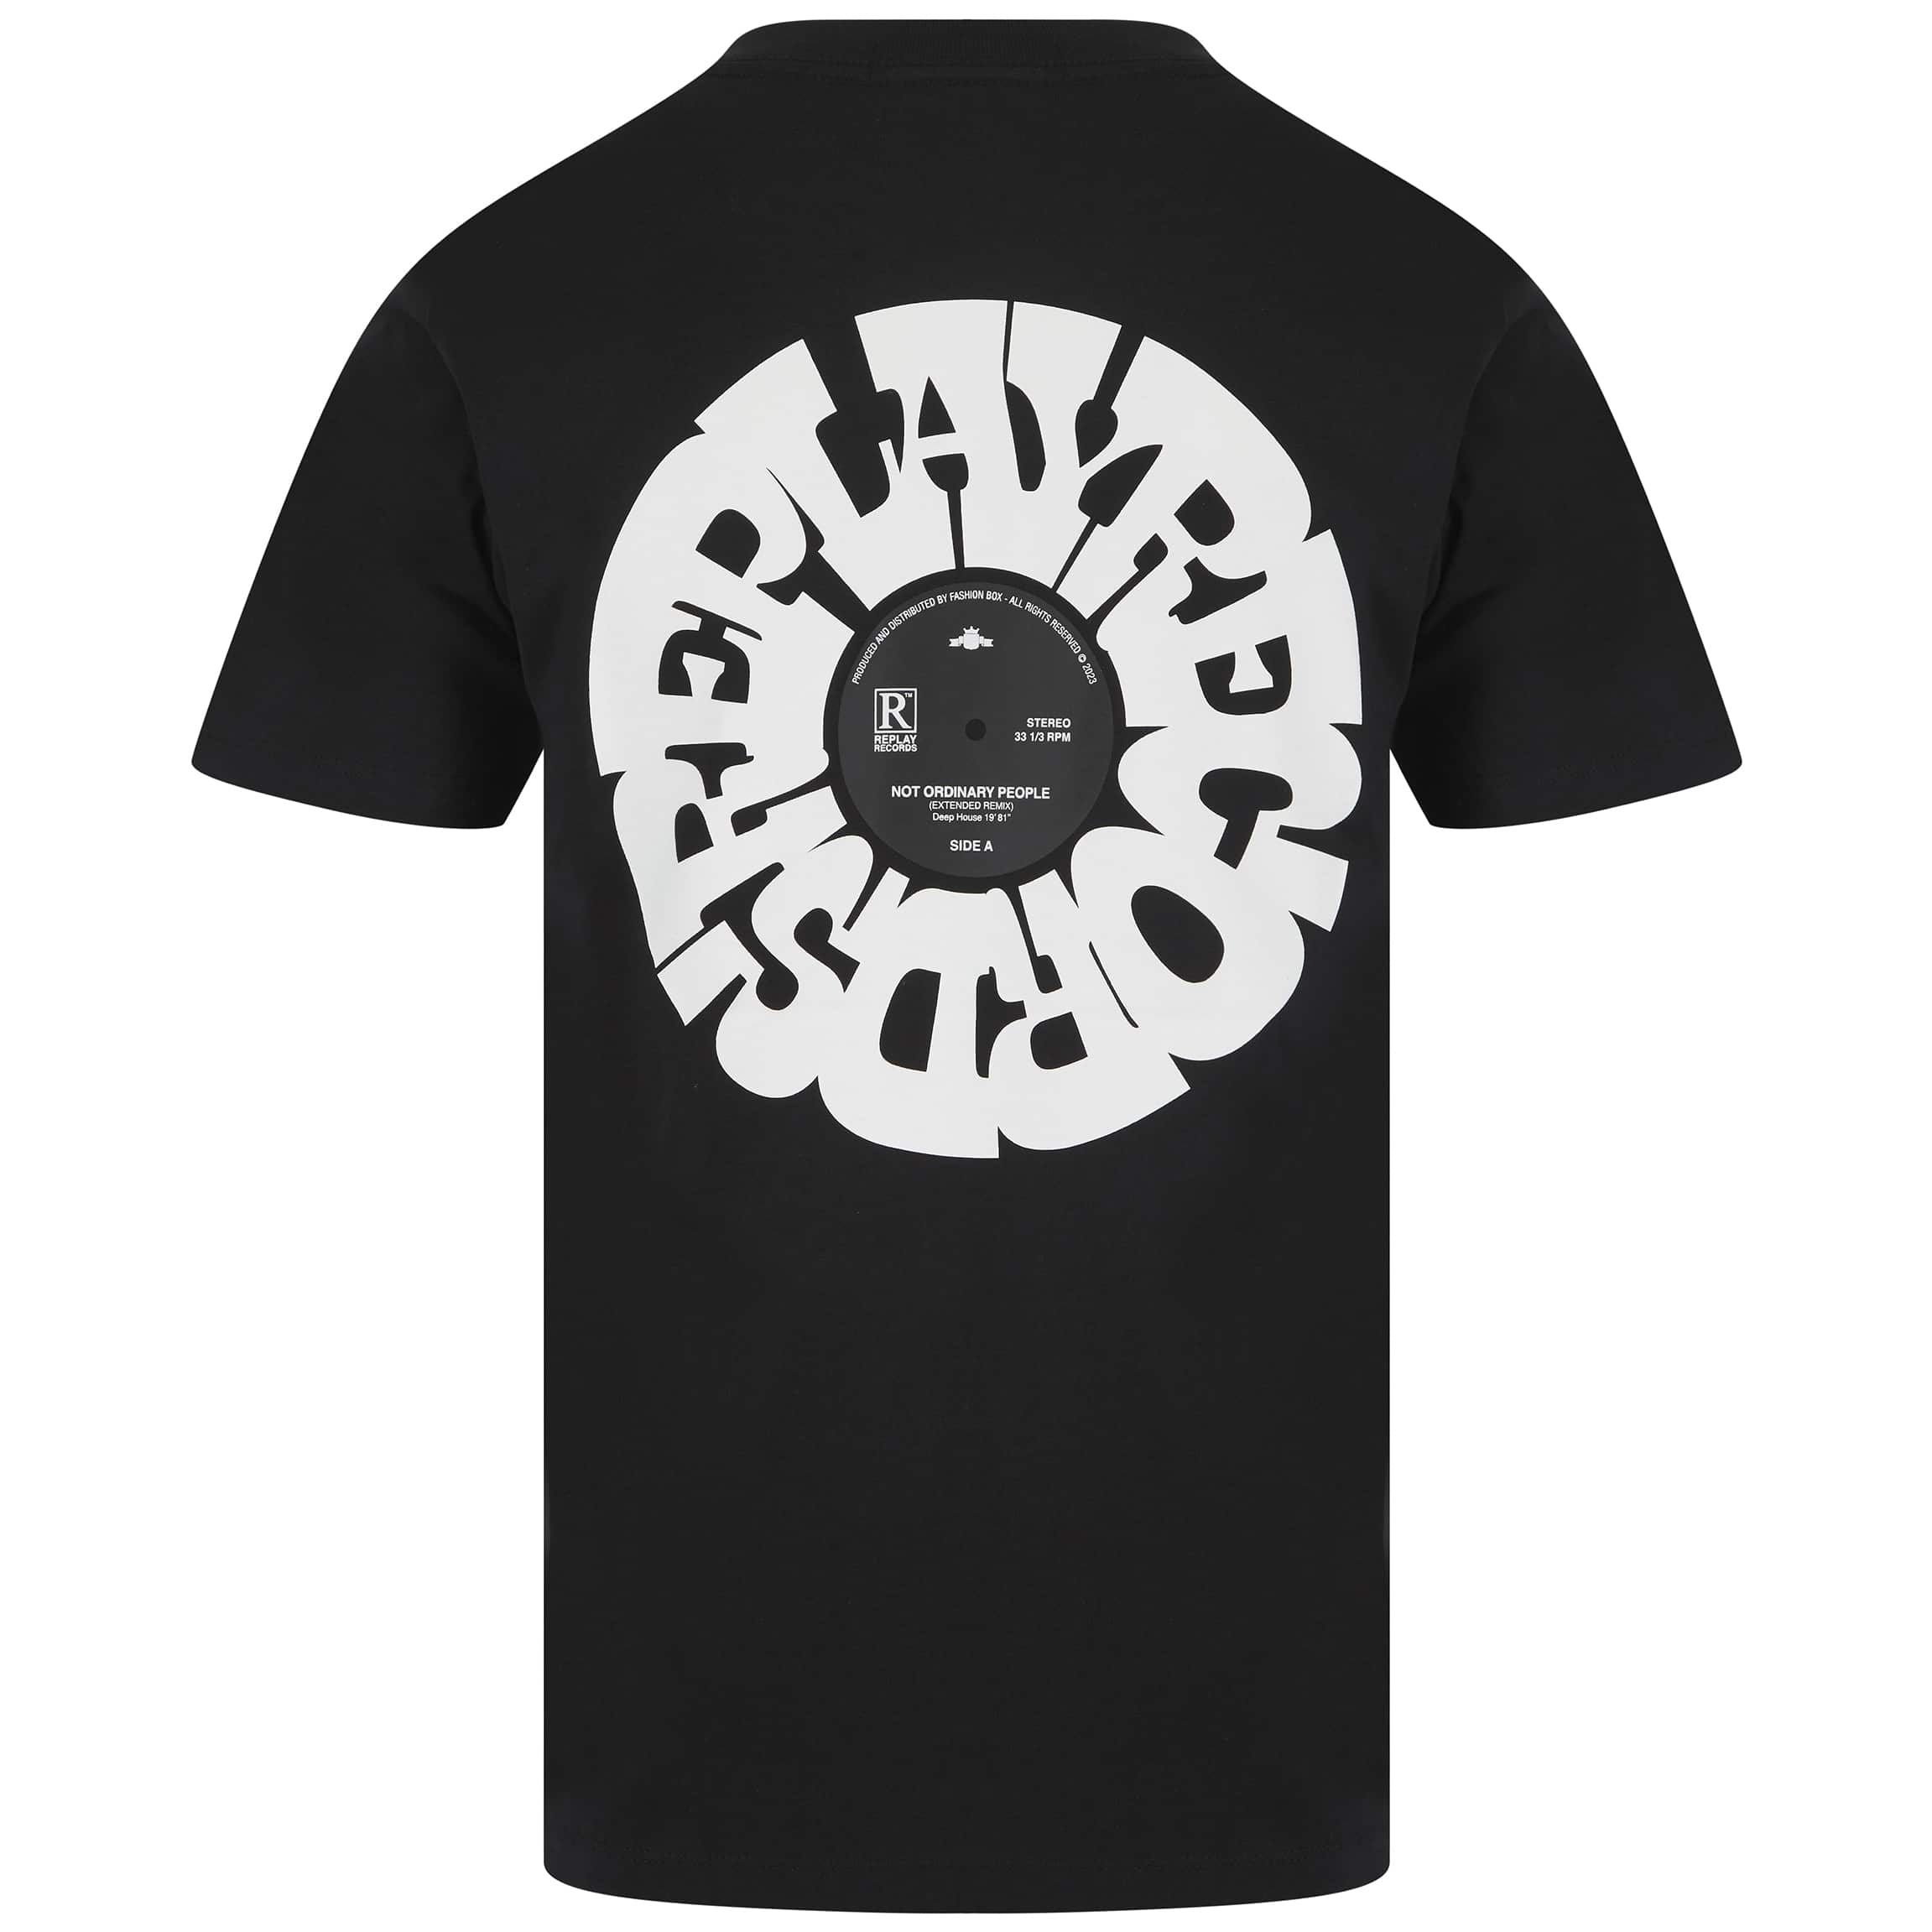 Print Replay T-Shirt Records – MISTR